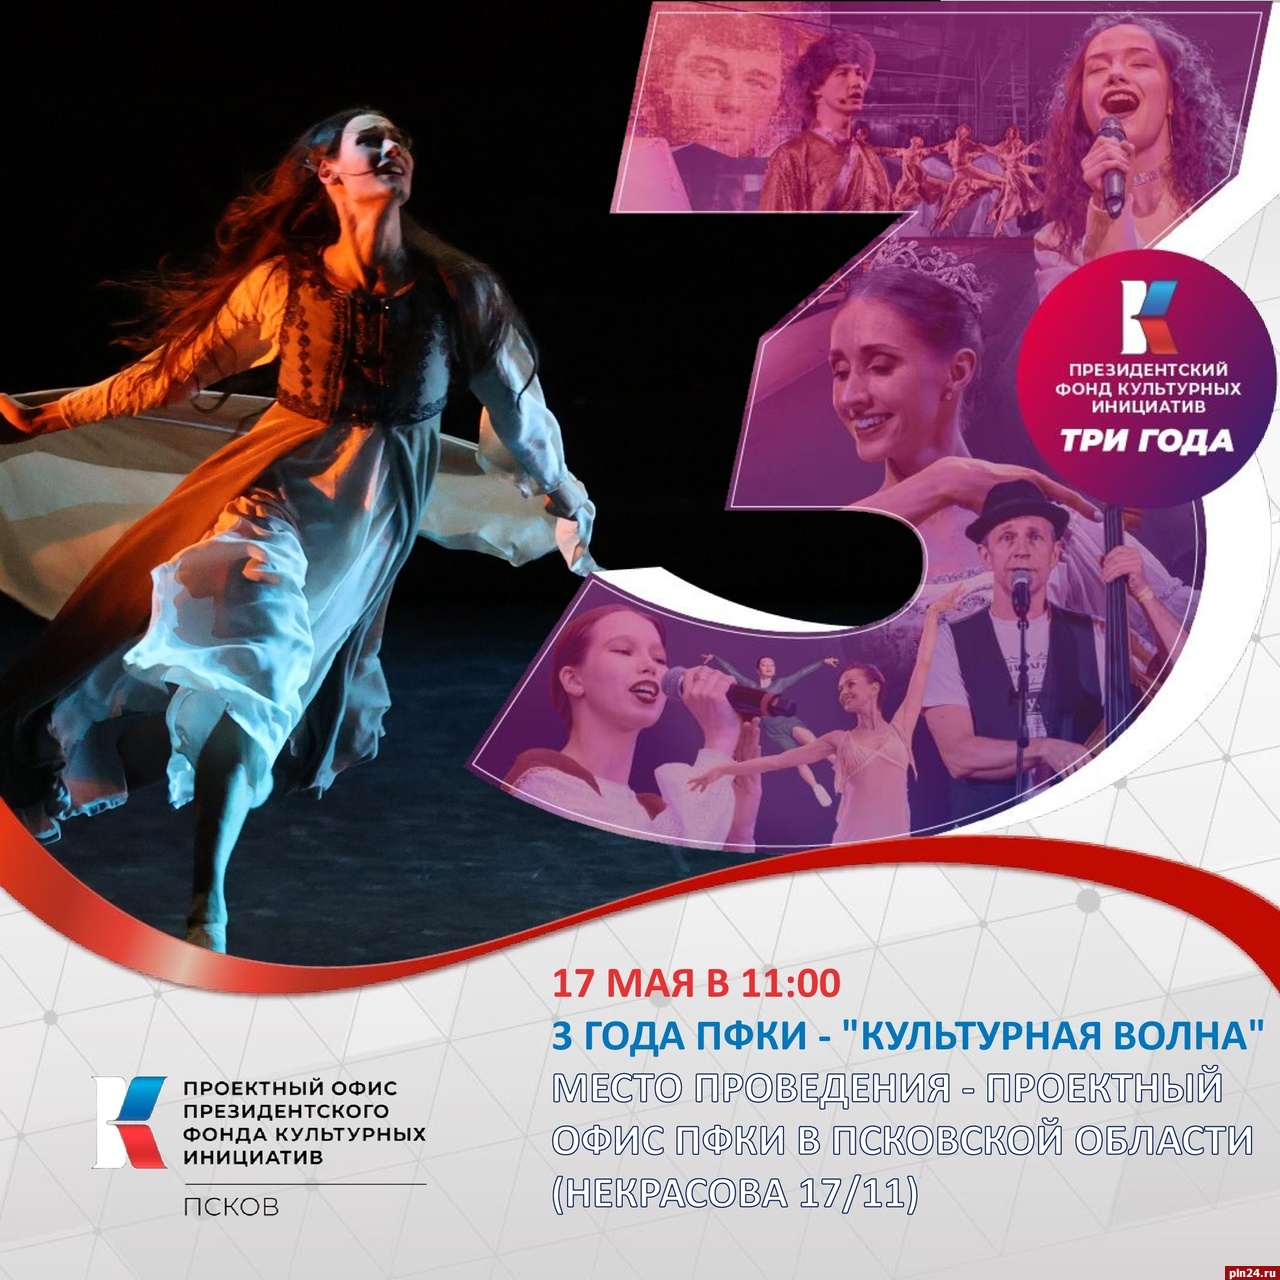 «Культурная волна» пройдет в Пскове в честь трехлетия фонда культурных инициатив